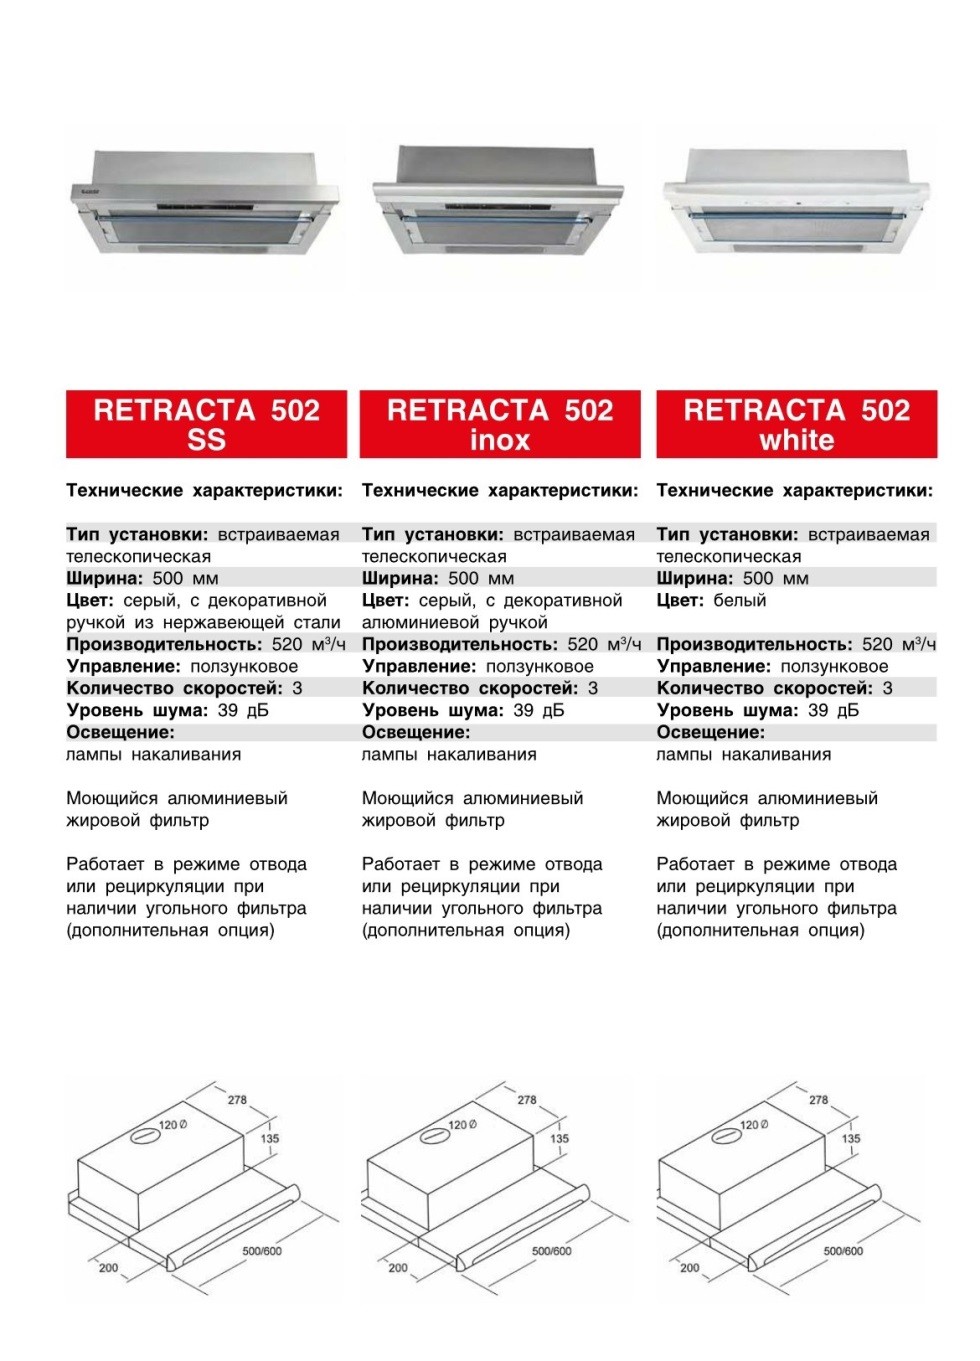 Кухонная вытяжка EXITEQ RETRACTA 2301 в Беларуси недорого. Каталог и цены